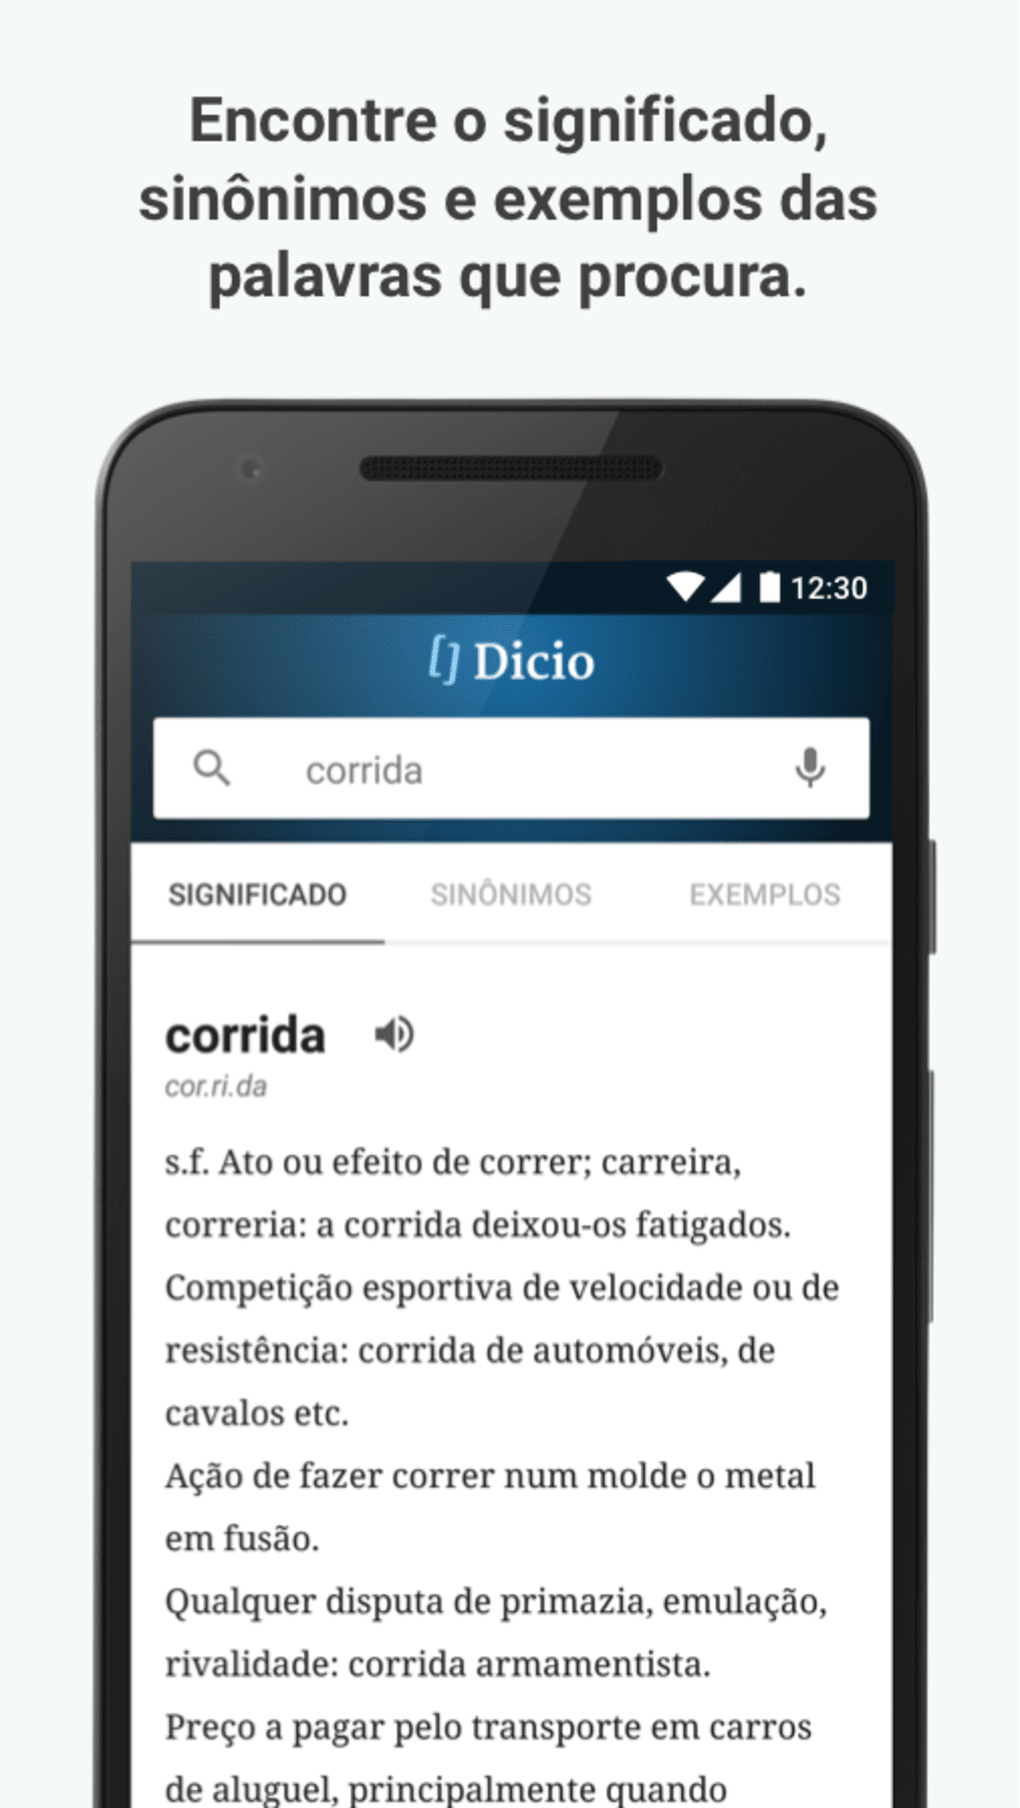 Delay - Dicio, Dicionário Online de Português